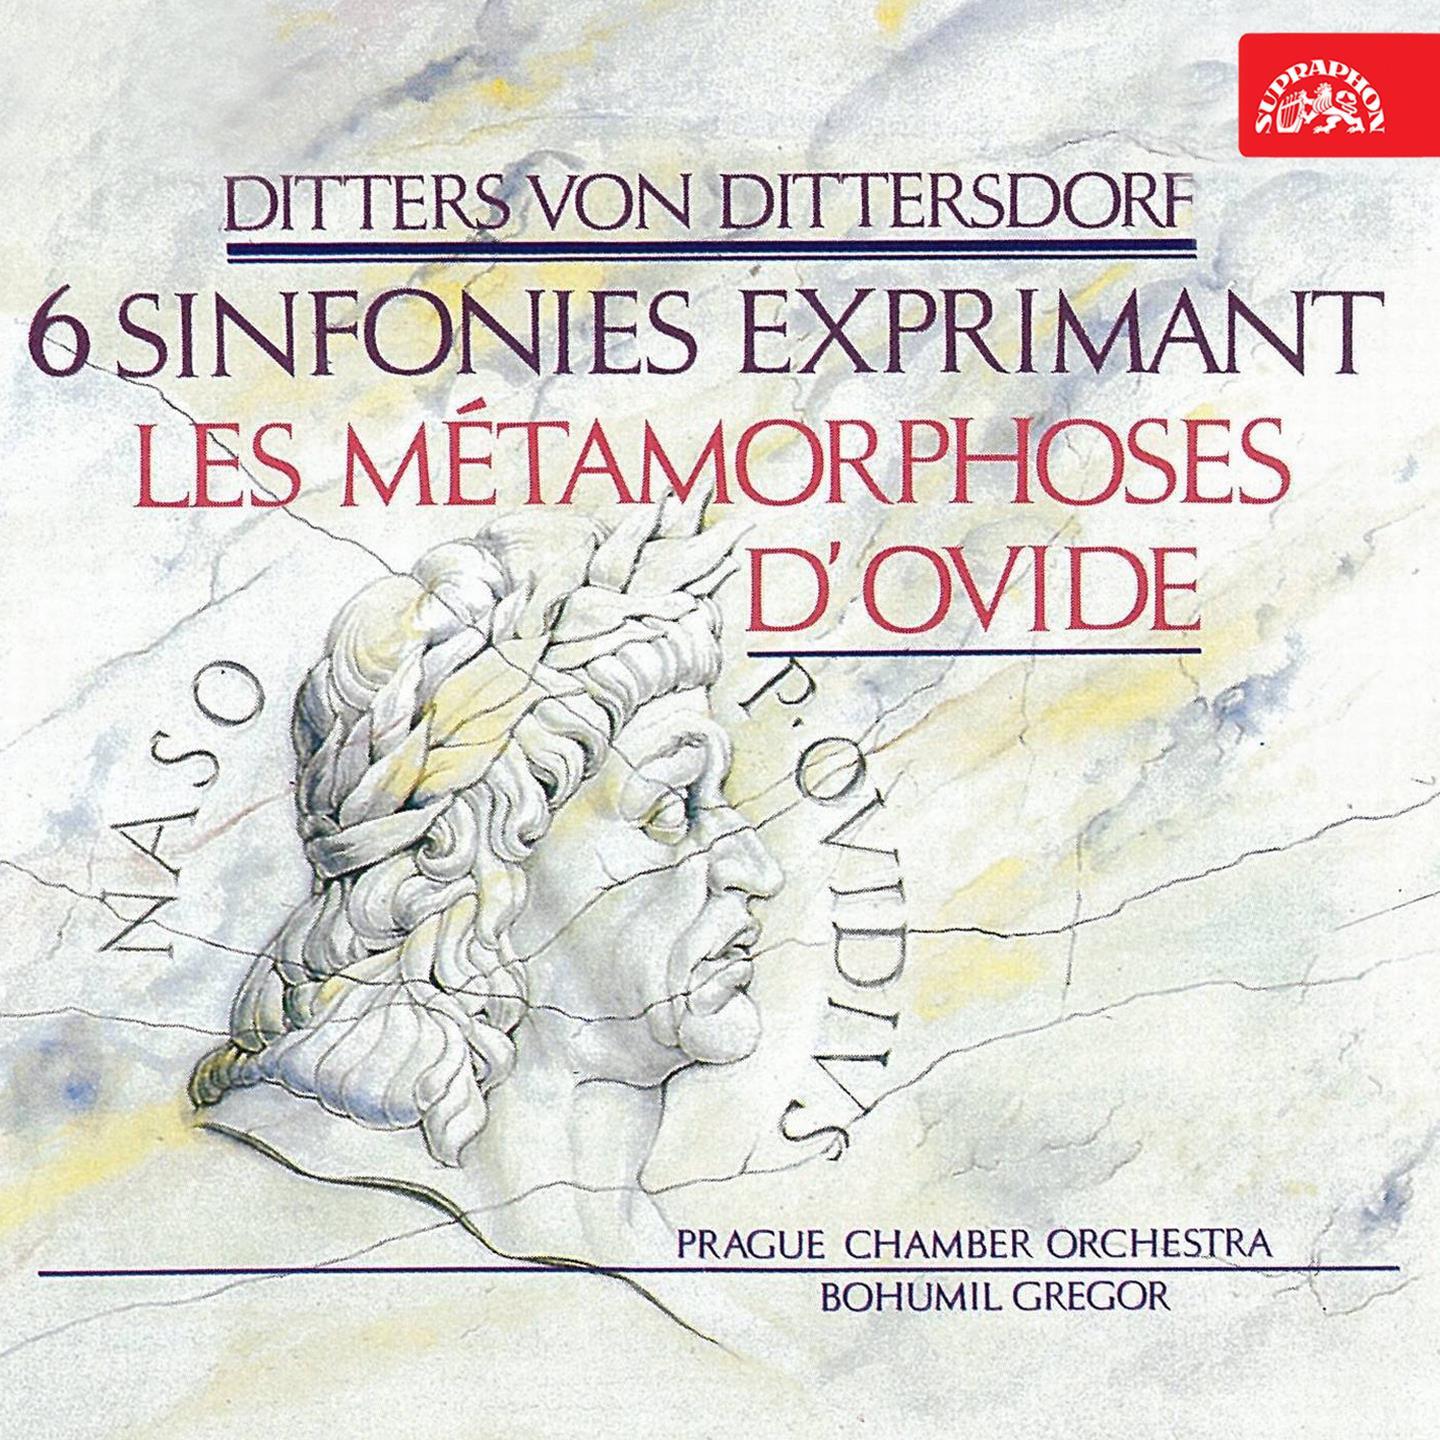 Symphonies After Ovid' s Metamorphoses, No. 2 in D Major, Kr. 74 " Der Sturz Pha tons": II. Andante